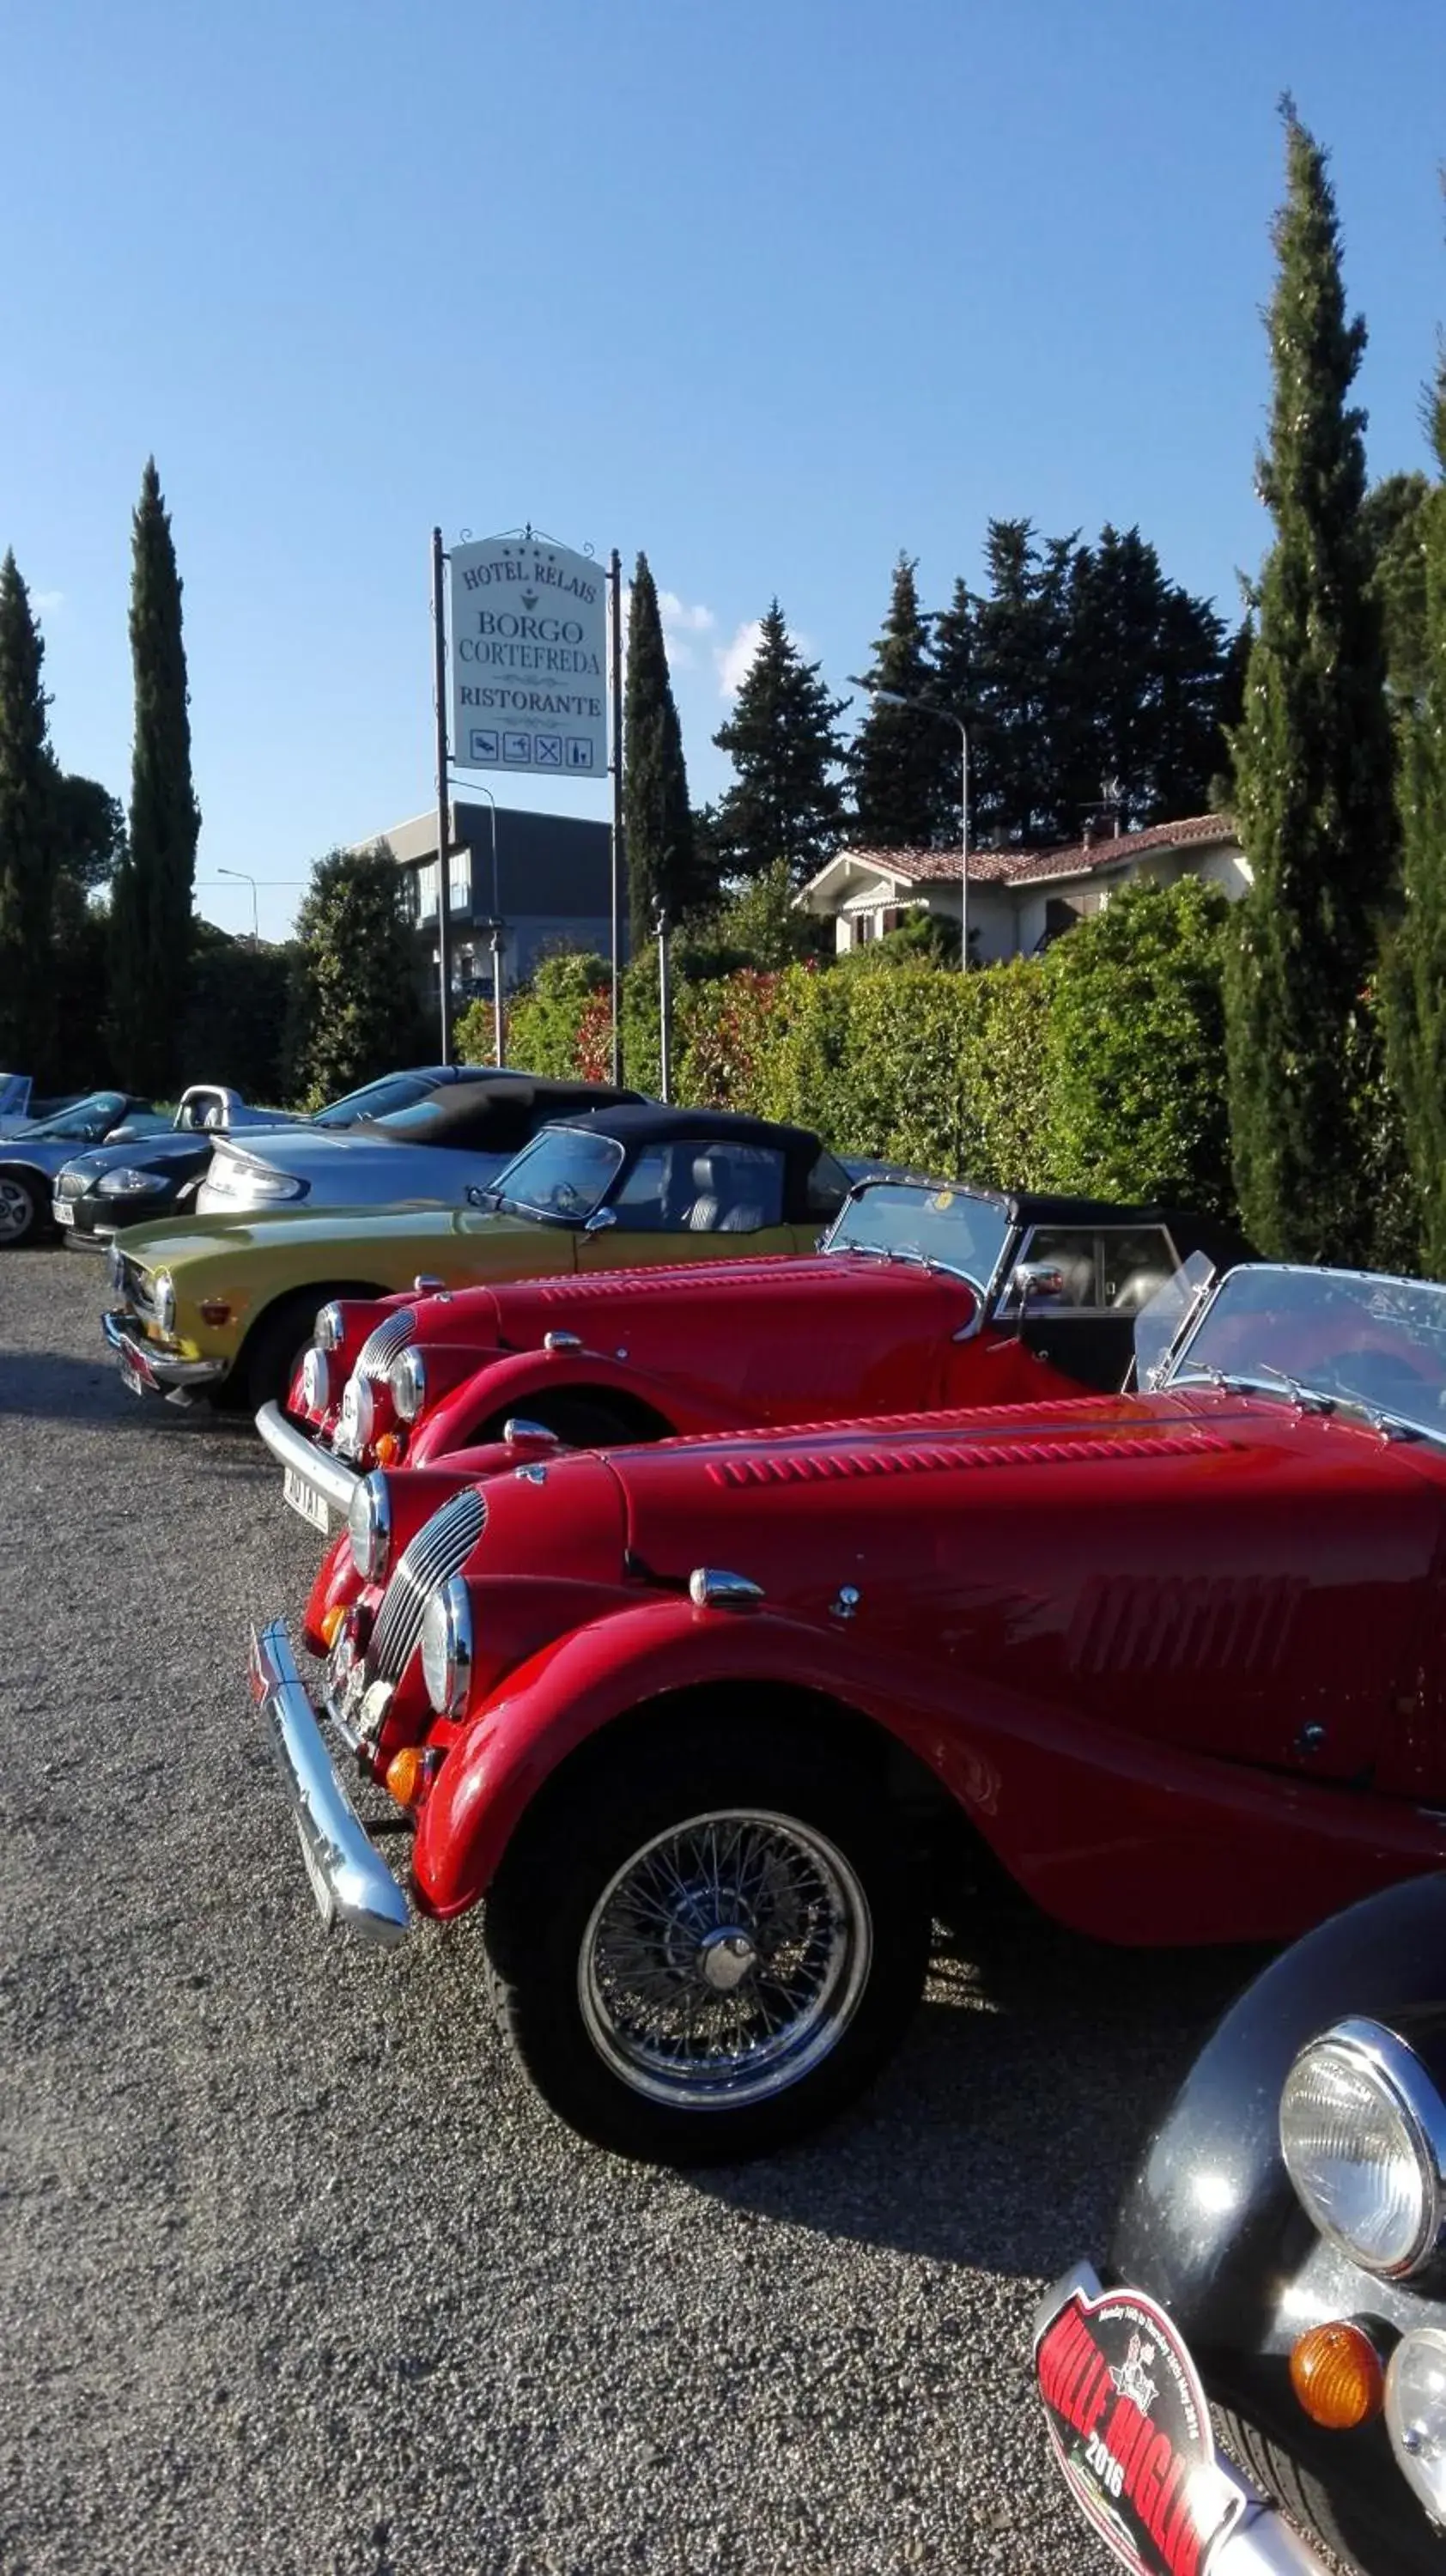 Parking in Hotel Borgo Di Cortefreda